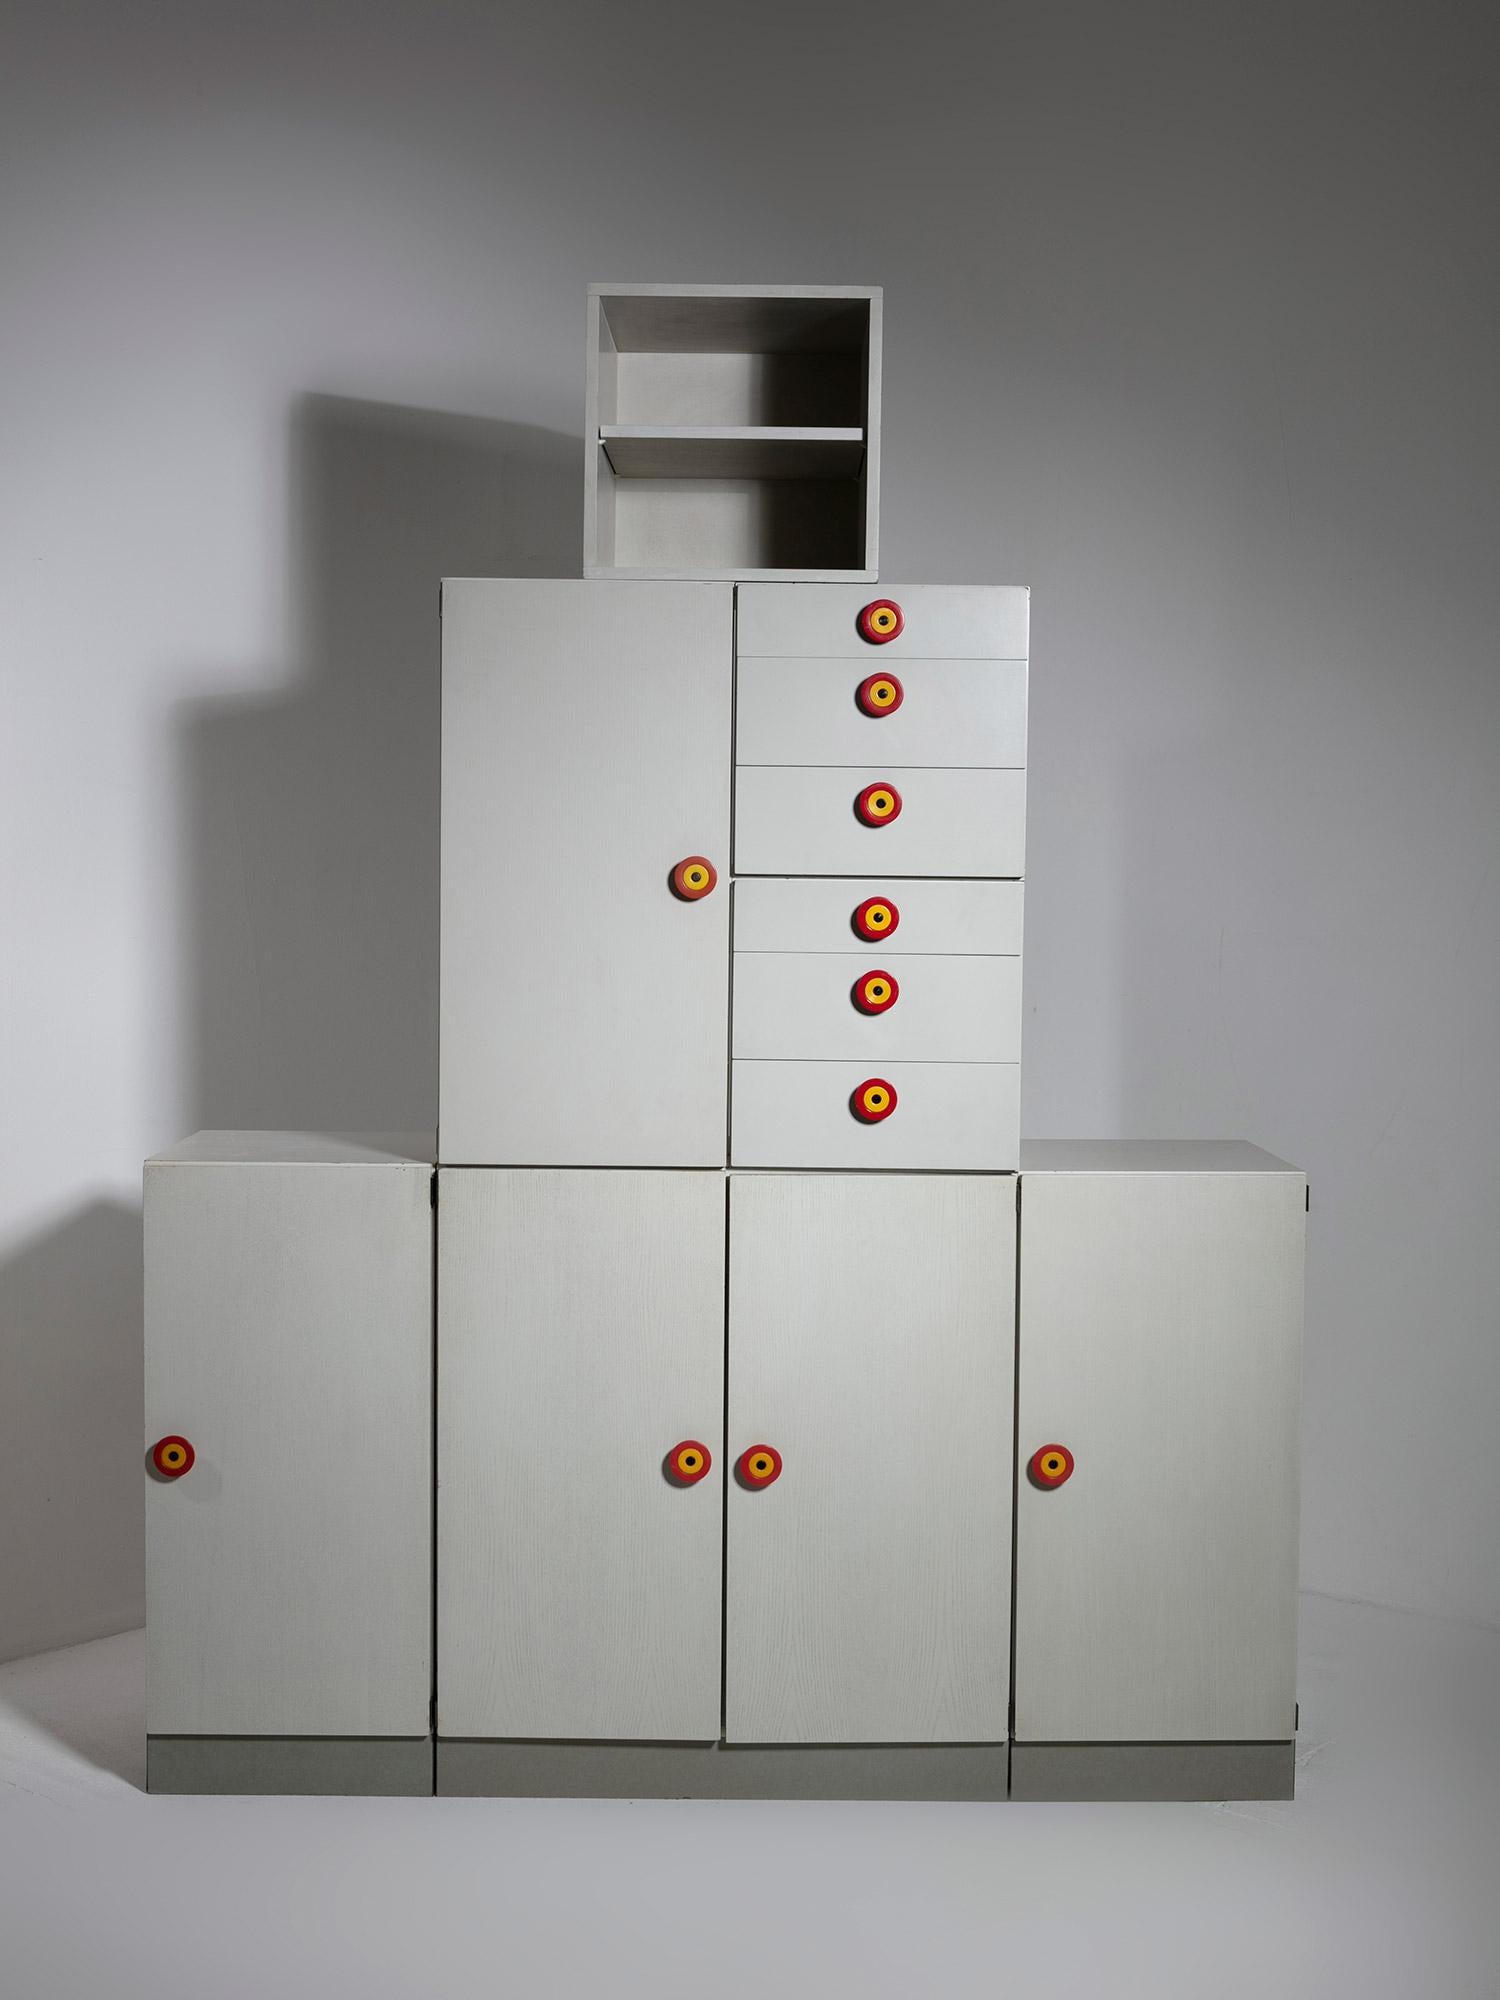 Seltenes 7er-Set des modularen Regalsystems Kubirolo von Ettore Sottsass für Poltronova.
Die Elemente können auf verschiedene Weise positioniert werden, von vollständig horizontal bis vertikal, um verschiedene Landschaften zu schaffen.
Die Größe